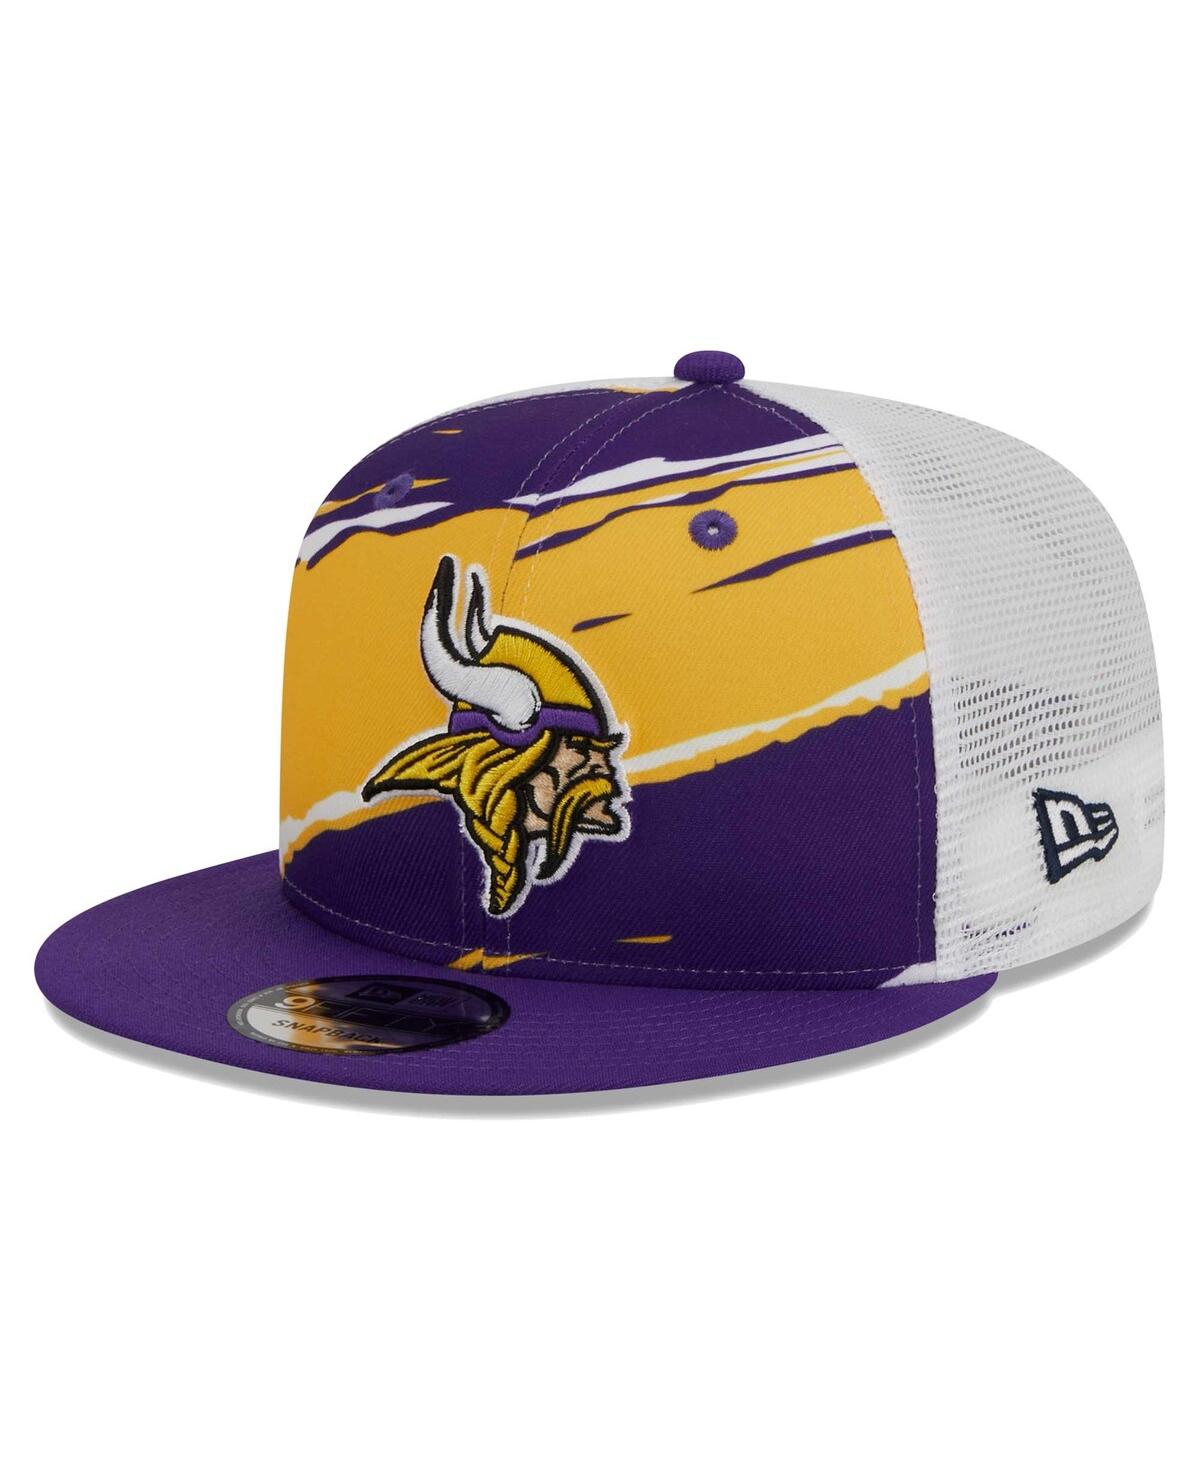 Shop New Era Men's  Purple Minnesota Vikings Tear Trucker 9fifty Snapback Hat